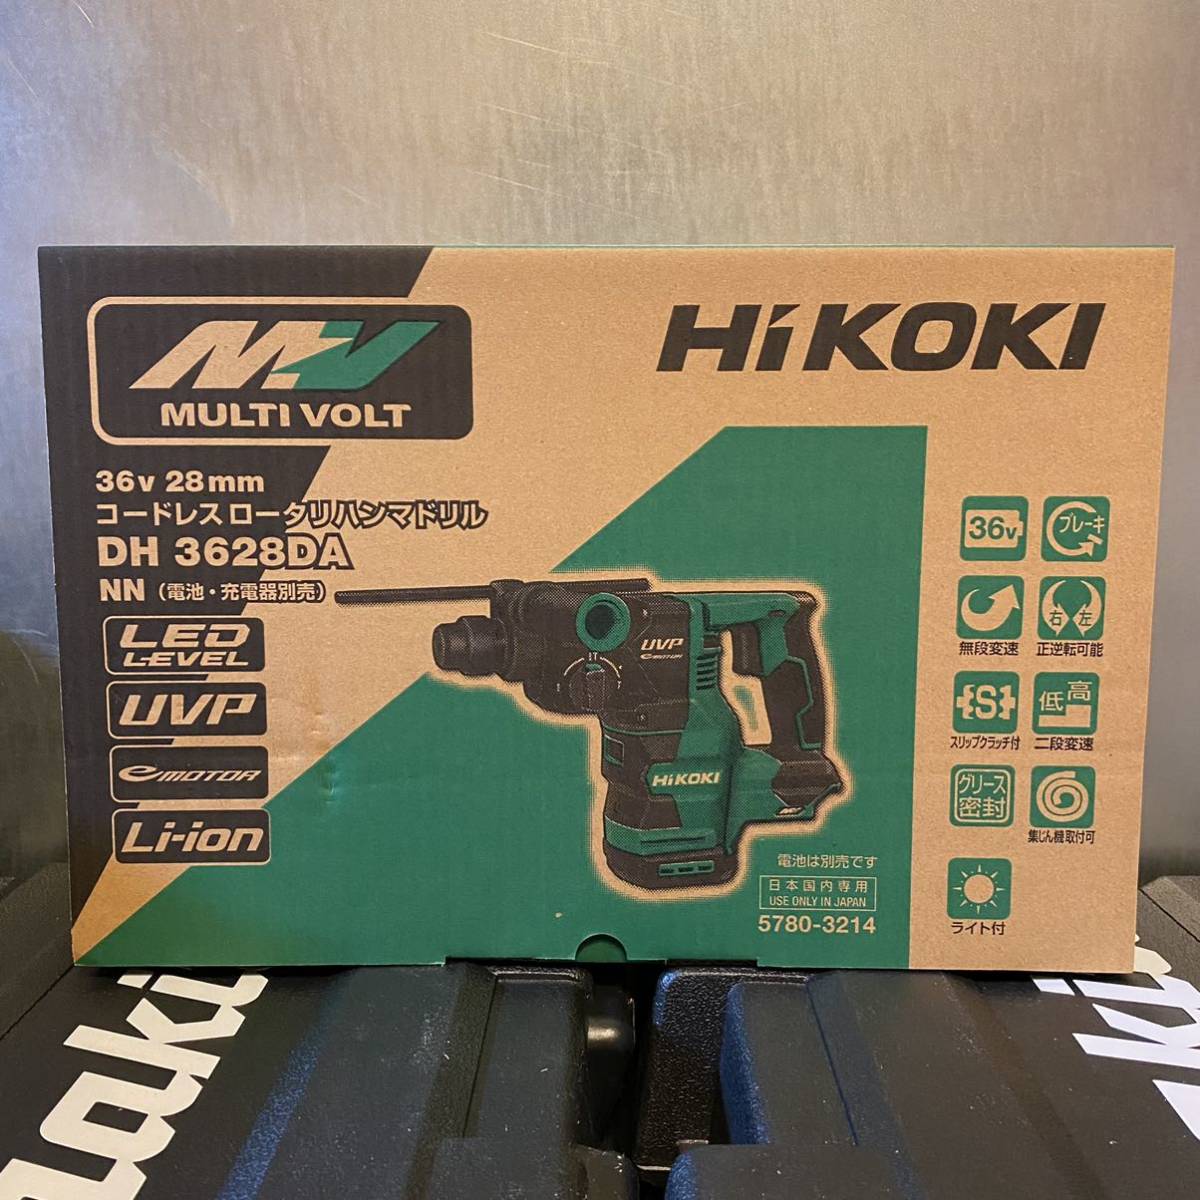 人気商品は HiKOKI 36vコードレスロータリハンマドリル 充電器ケース